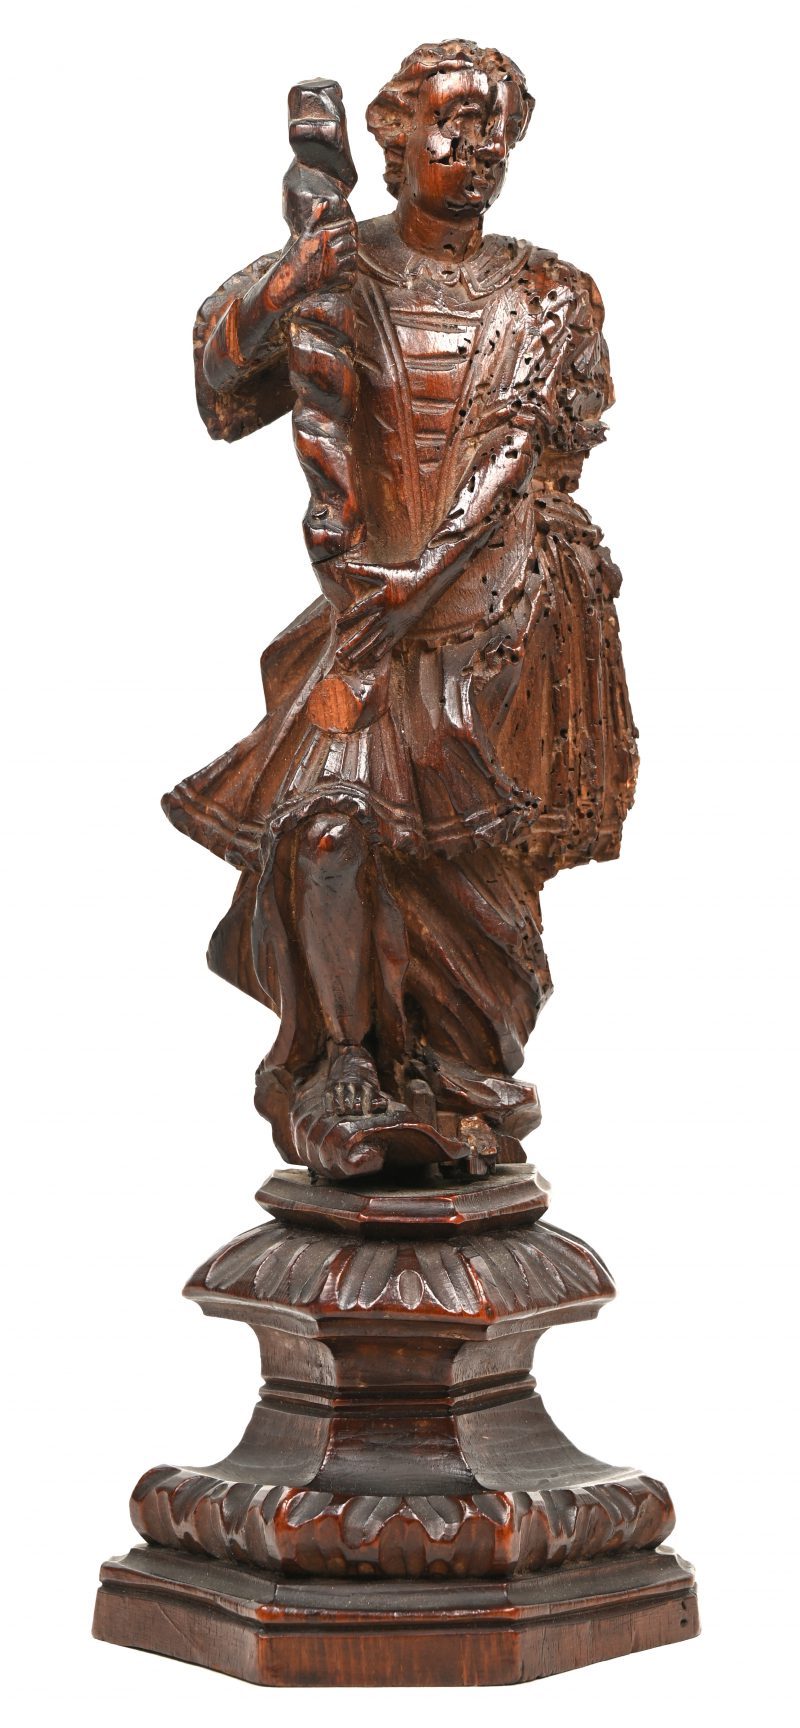 Houten sculptuur van een romeinse man, aangevreten door houtworm.